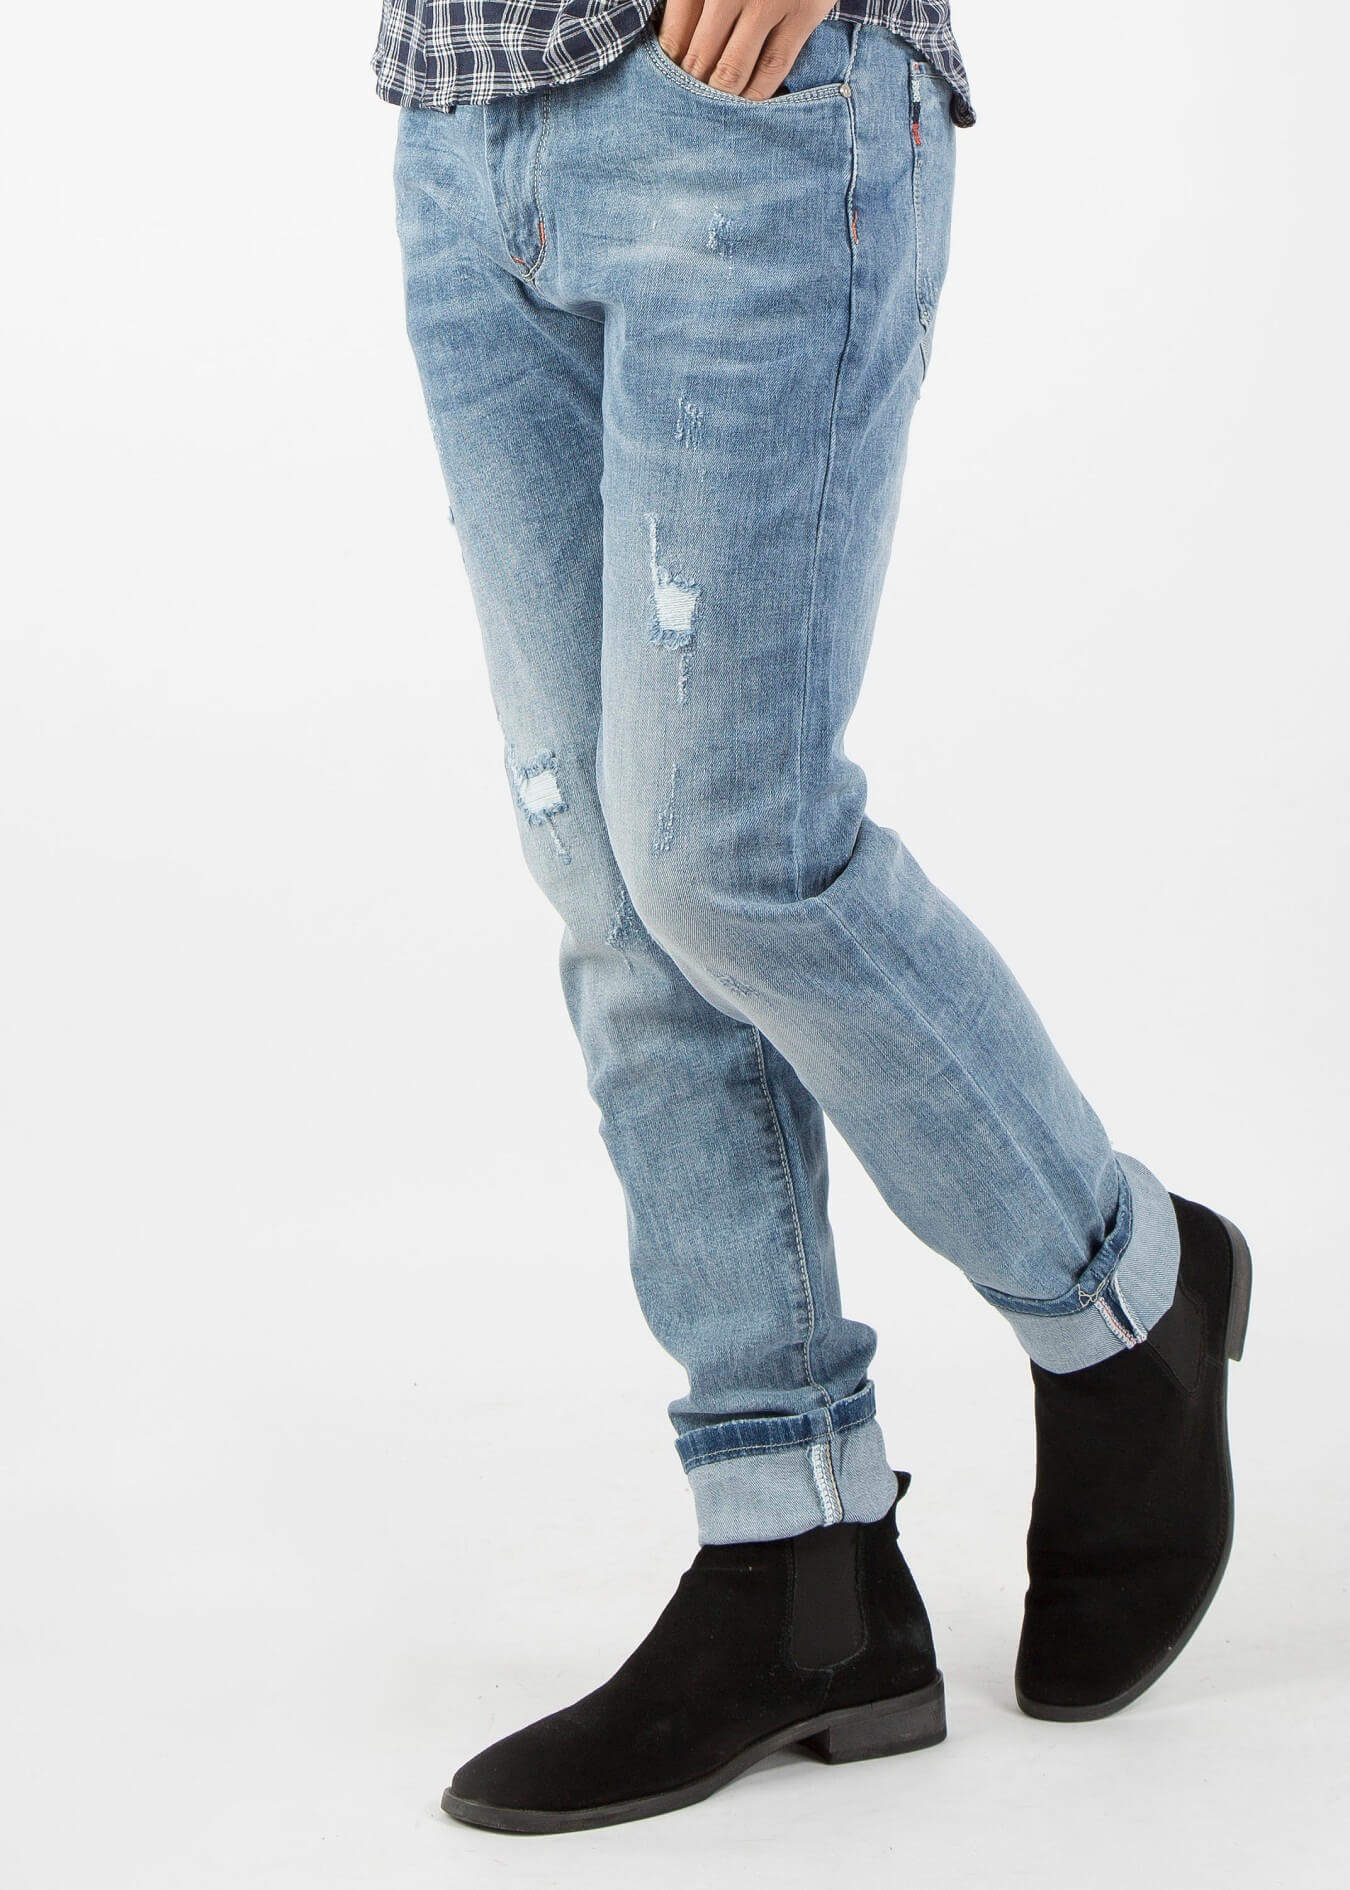 TripleR - shop bán quần jean nam nữ đẹp ở TPHCM